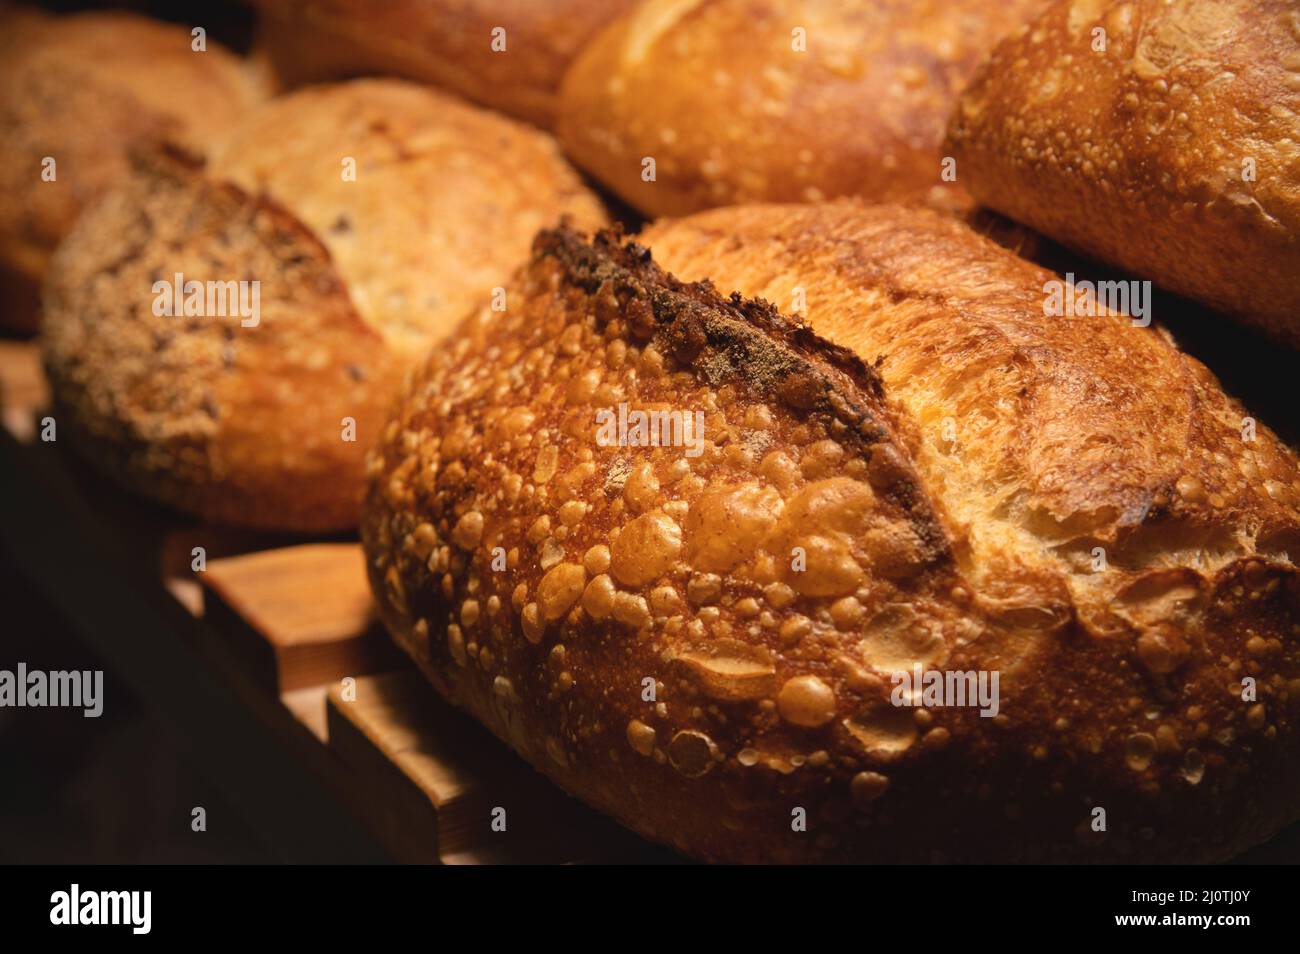 Frisch gebackene heiße Laibe knusprig hausgemachtes Brot aus nächster Nähe. Gesunde Lebensmittel und richtige Ernährung Stockfoto